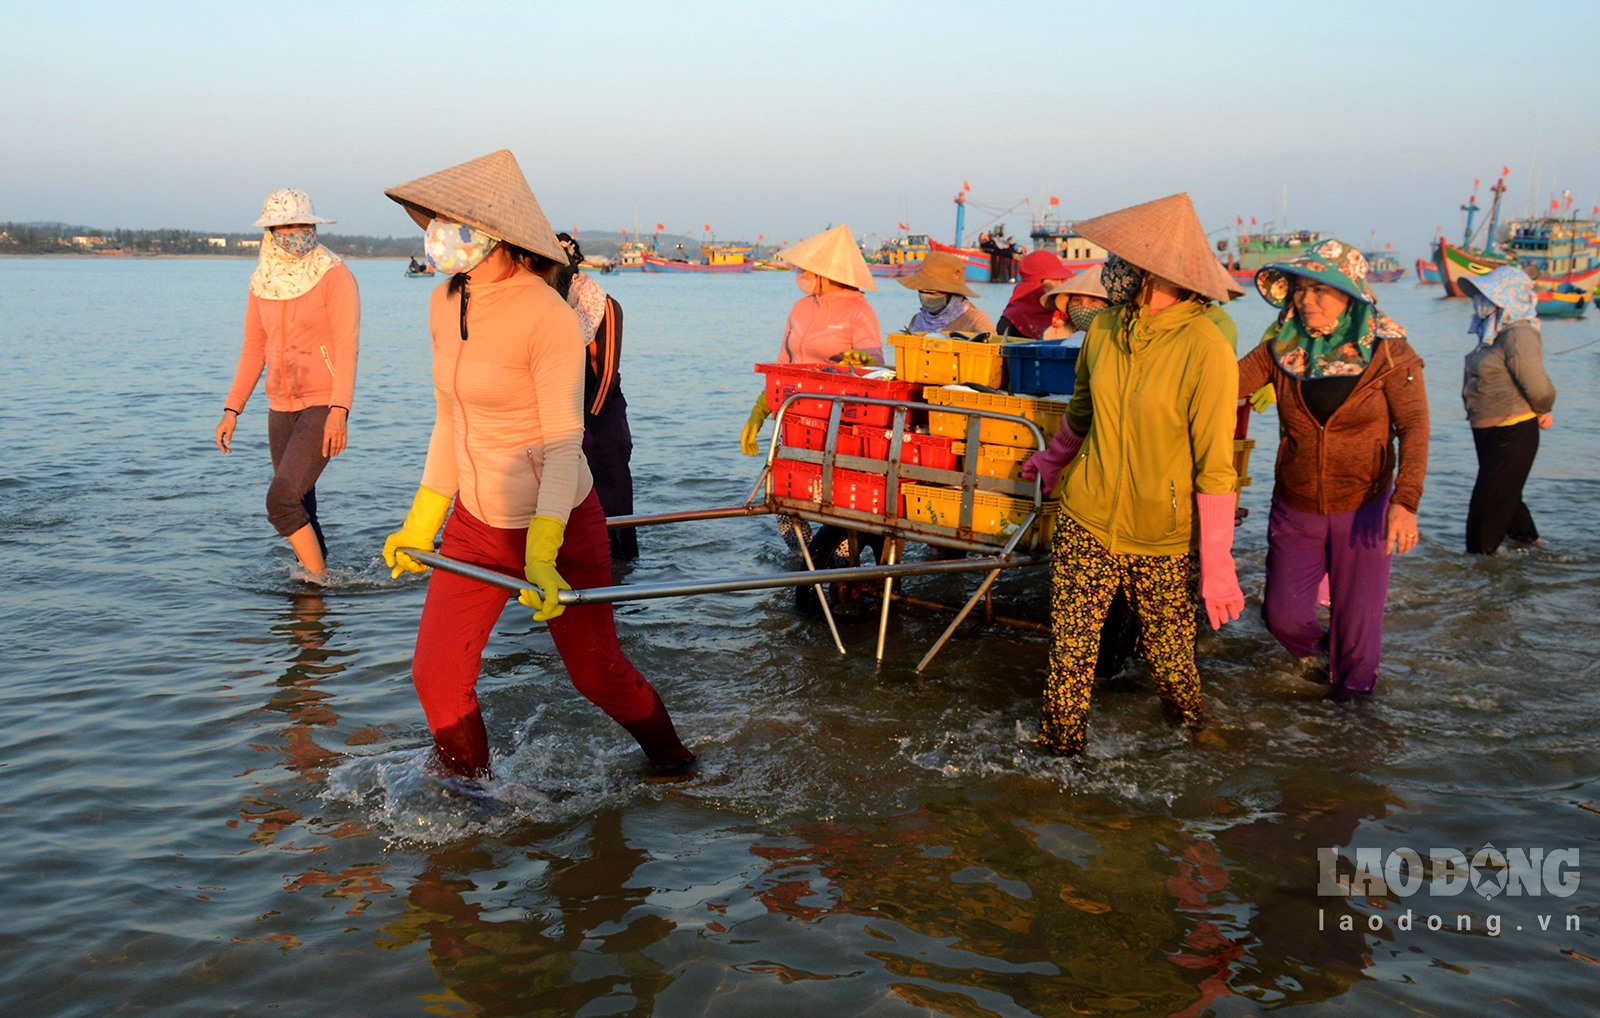 Chợ làng biển ở Quảng Ngãi, trên trời ánh bình minh, dưới tấp nập người mua bán, toàn thấy cá là cá - Ảnh 7.